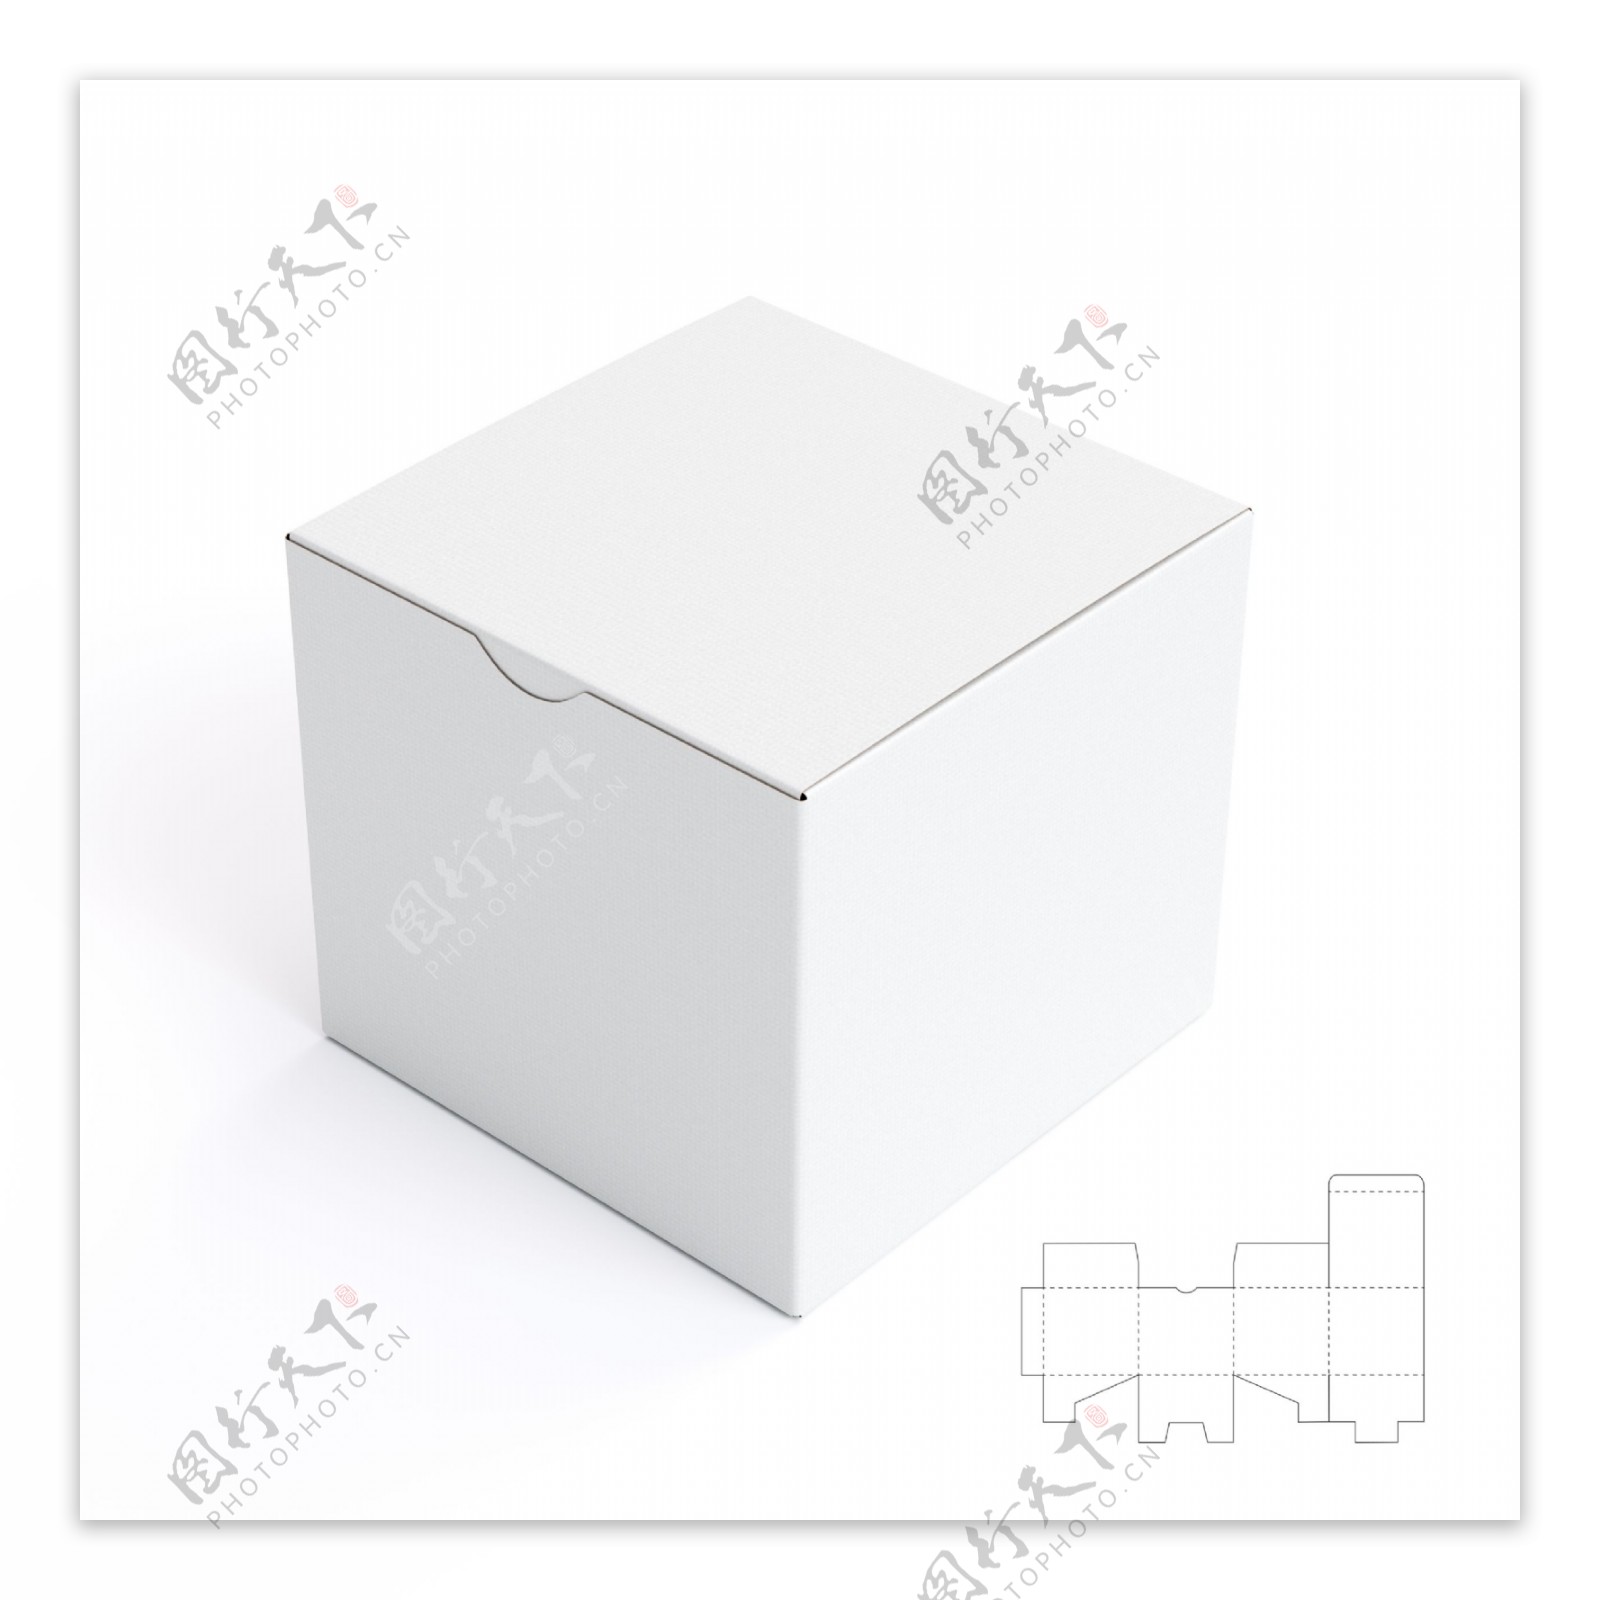 正方形包装盒设计